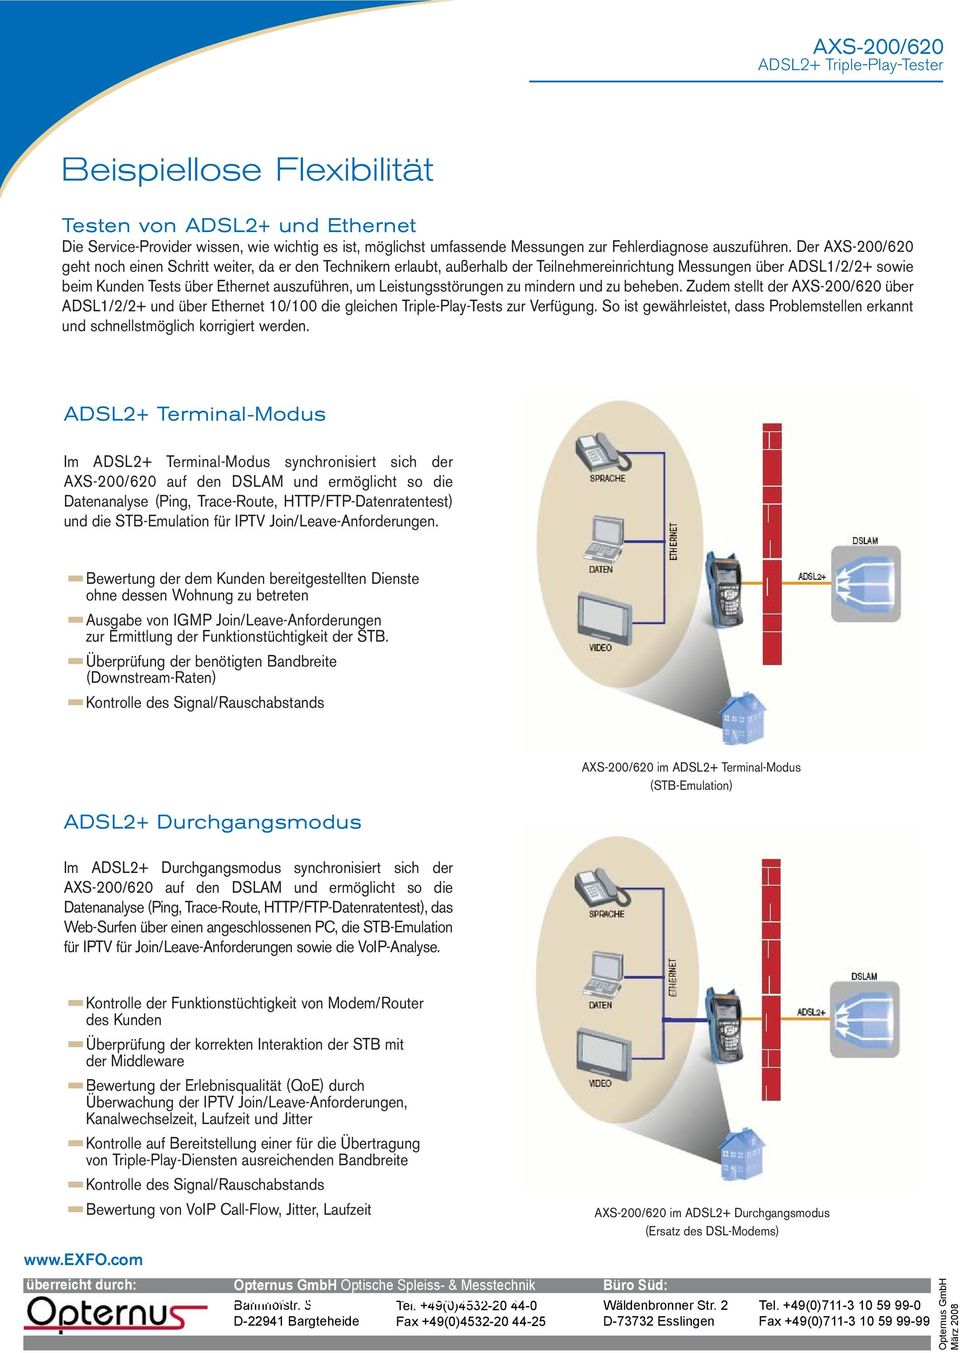 Leistungsstörungen zu mindern und zu beheben. Zudem stellt der AXS-200/620 über ADSL1/2/2+ und über Ethernet 10/100 die gleichen Triple-Play-Tests zur Verfügung.